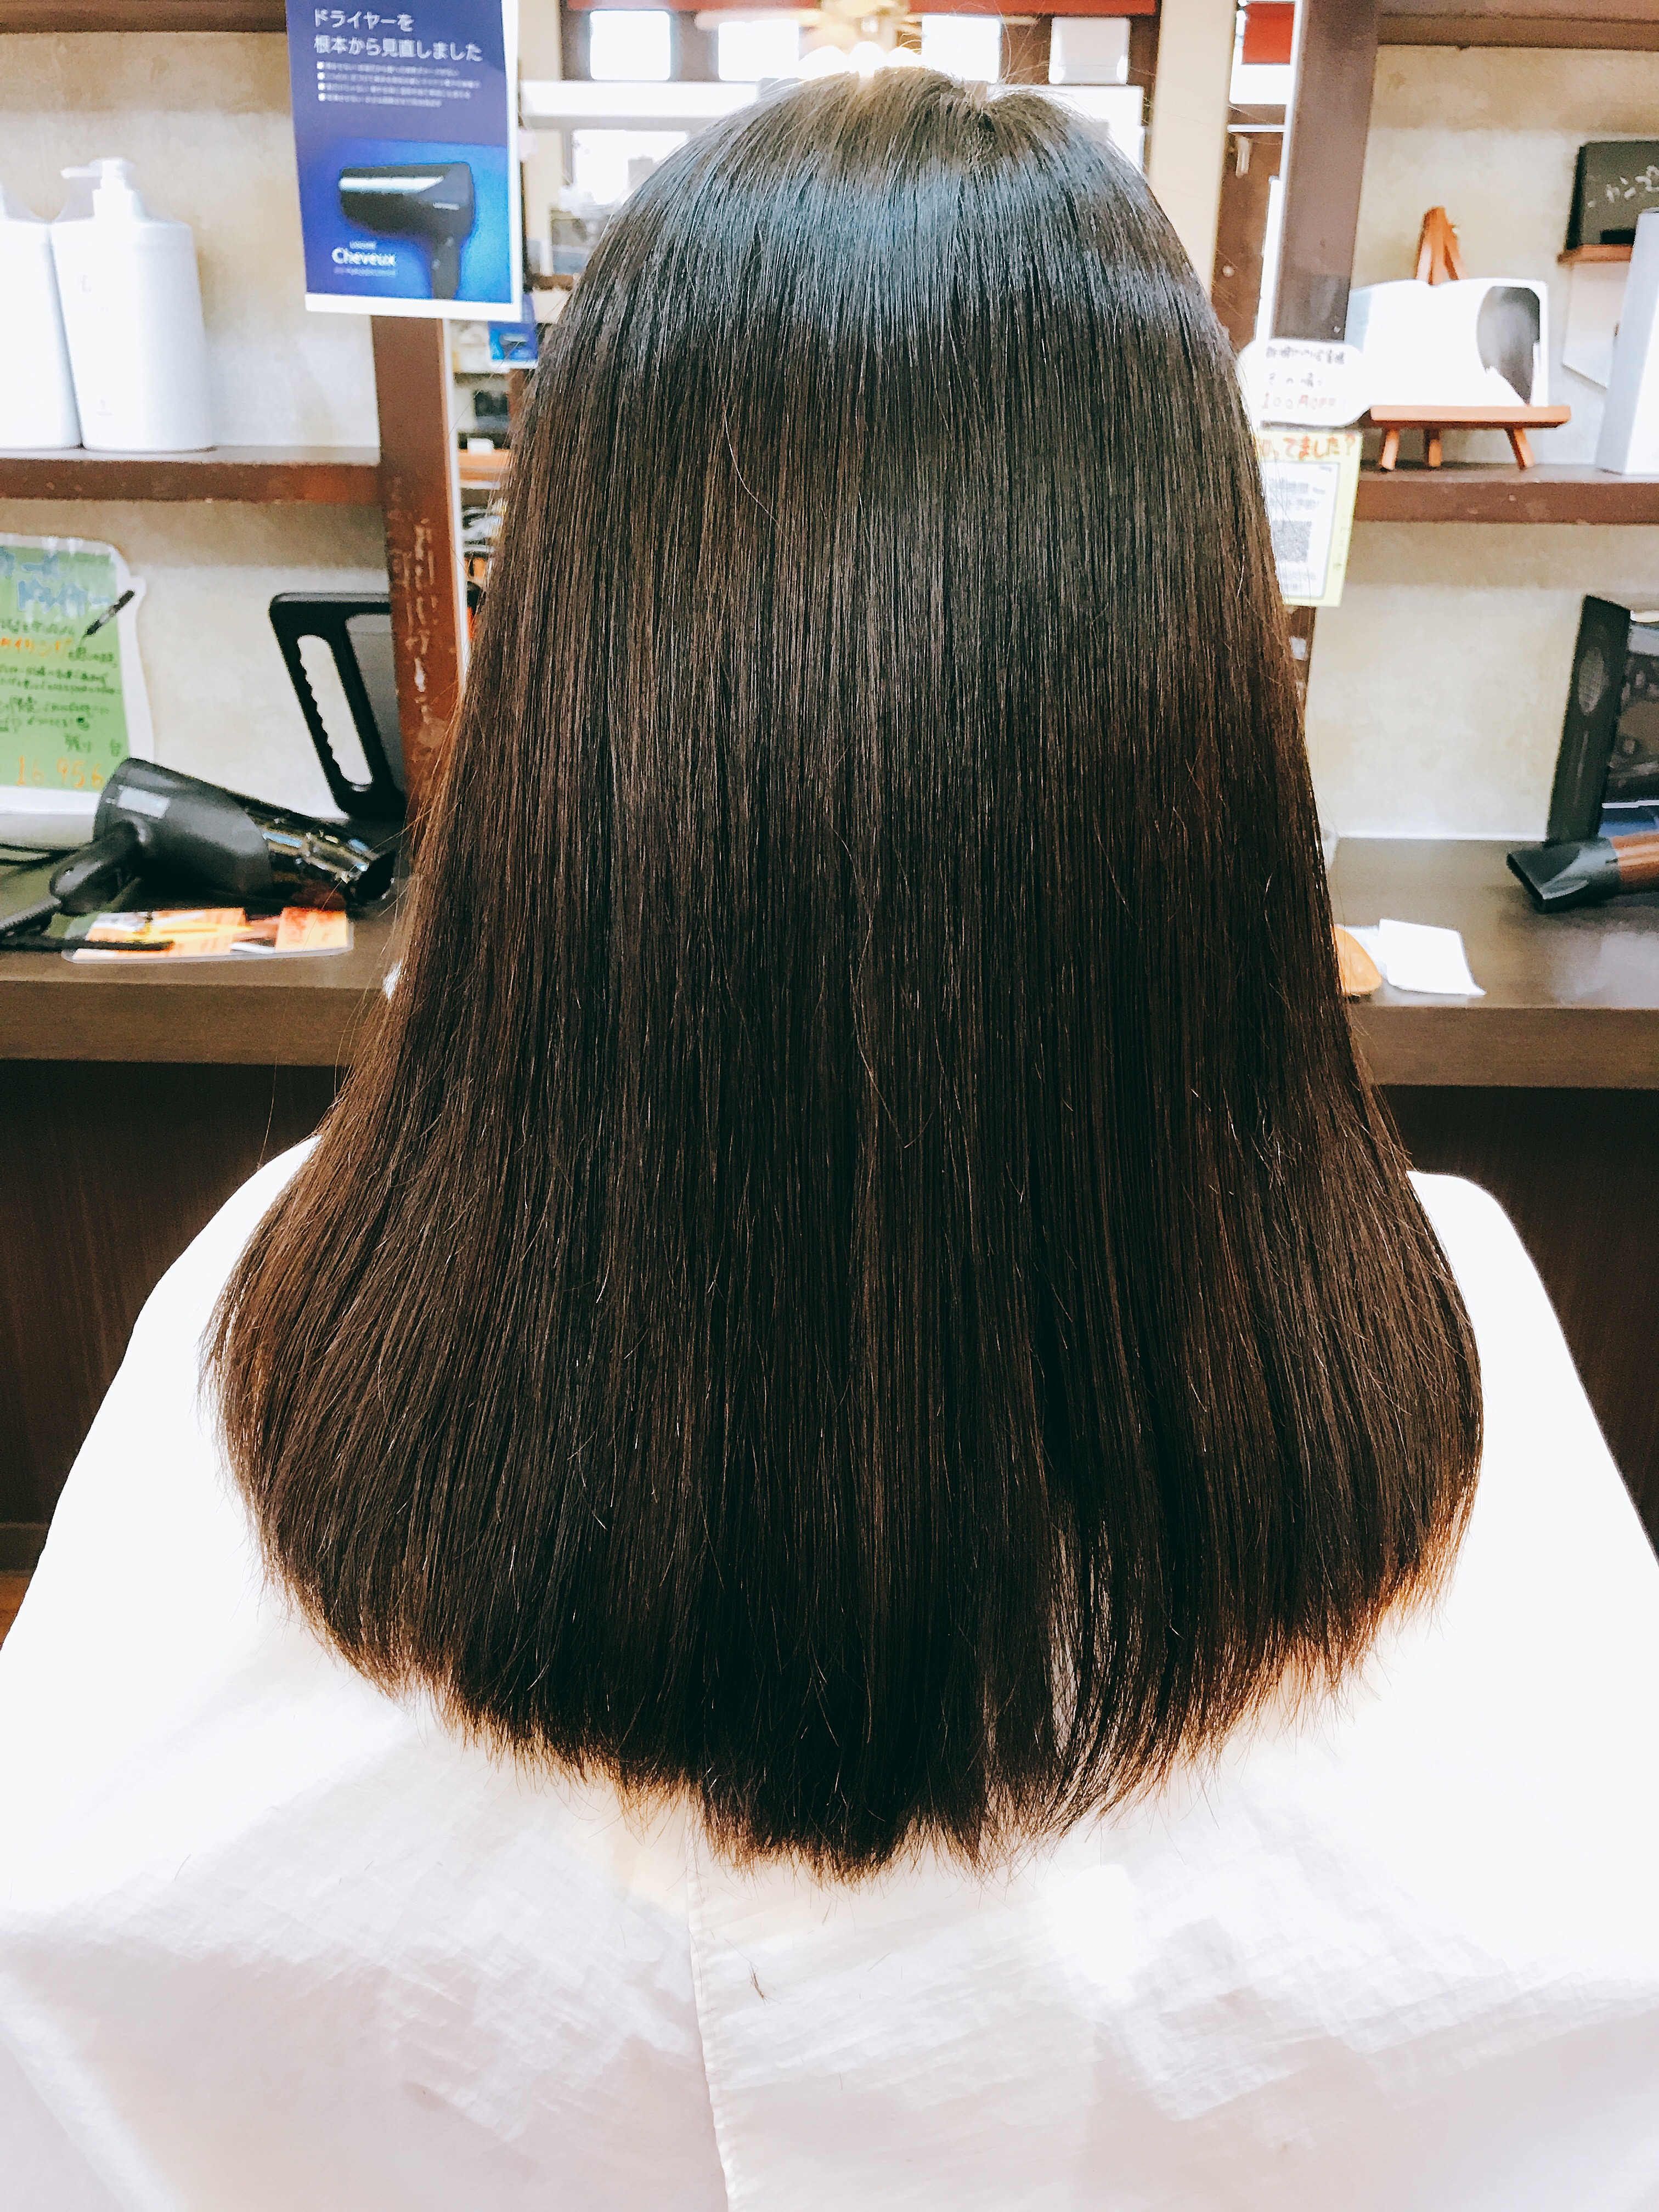 ストレートパーマ と 縮毛矯正 の違いを知ろう 奈良県で口コミが人気の美容室 ヘアサロン ウェルズ公式ブログ